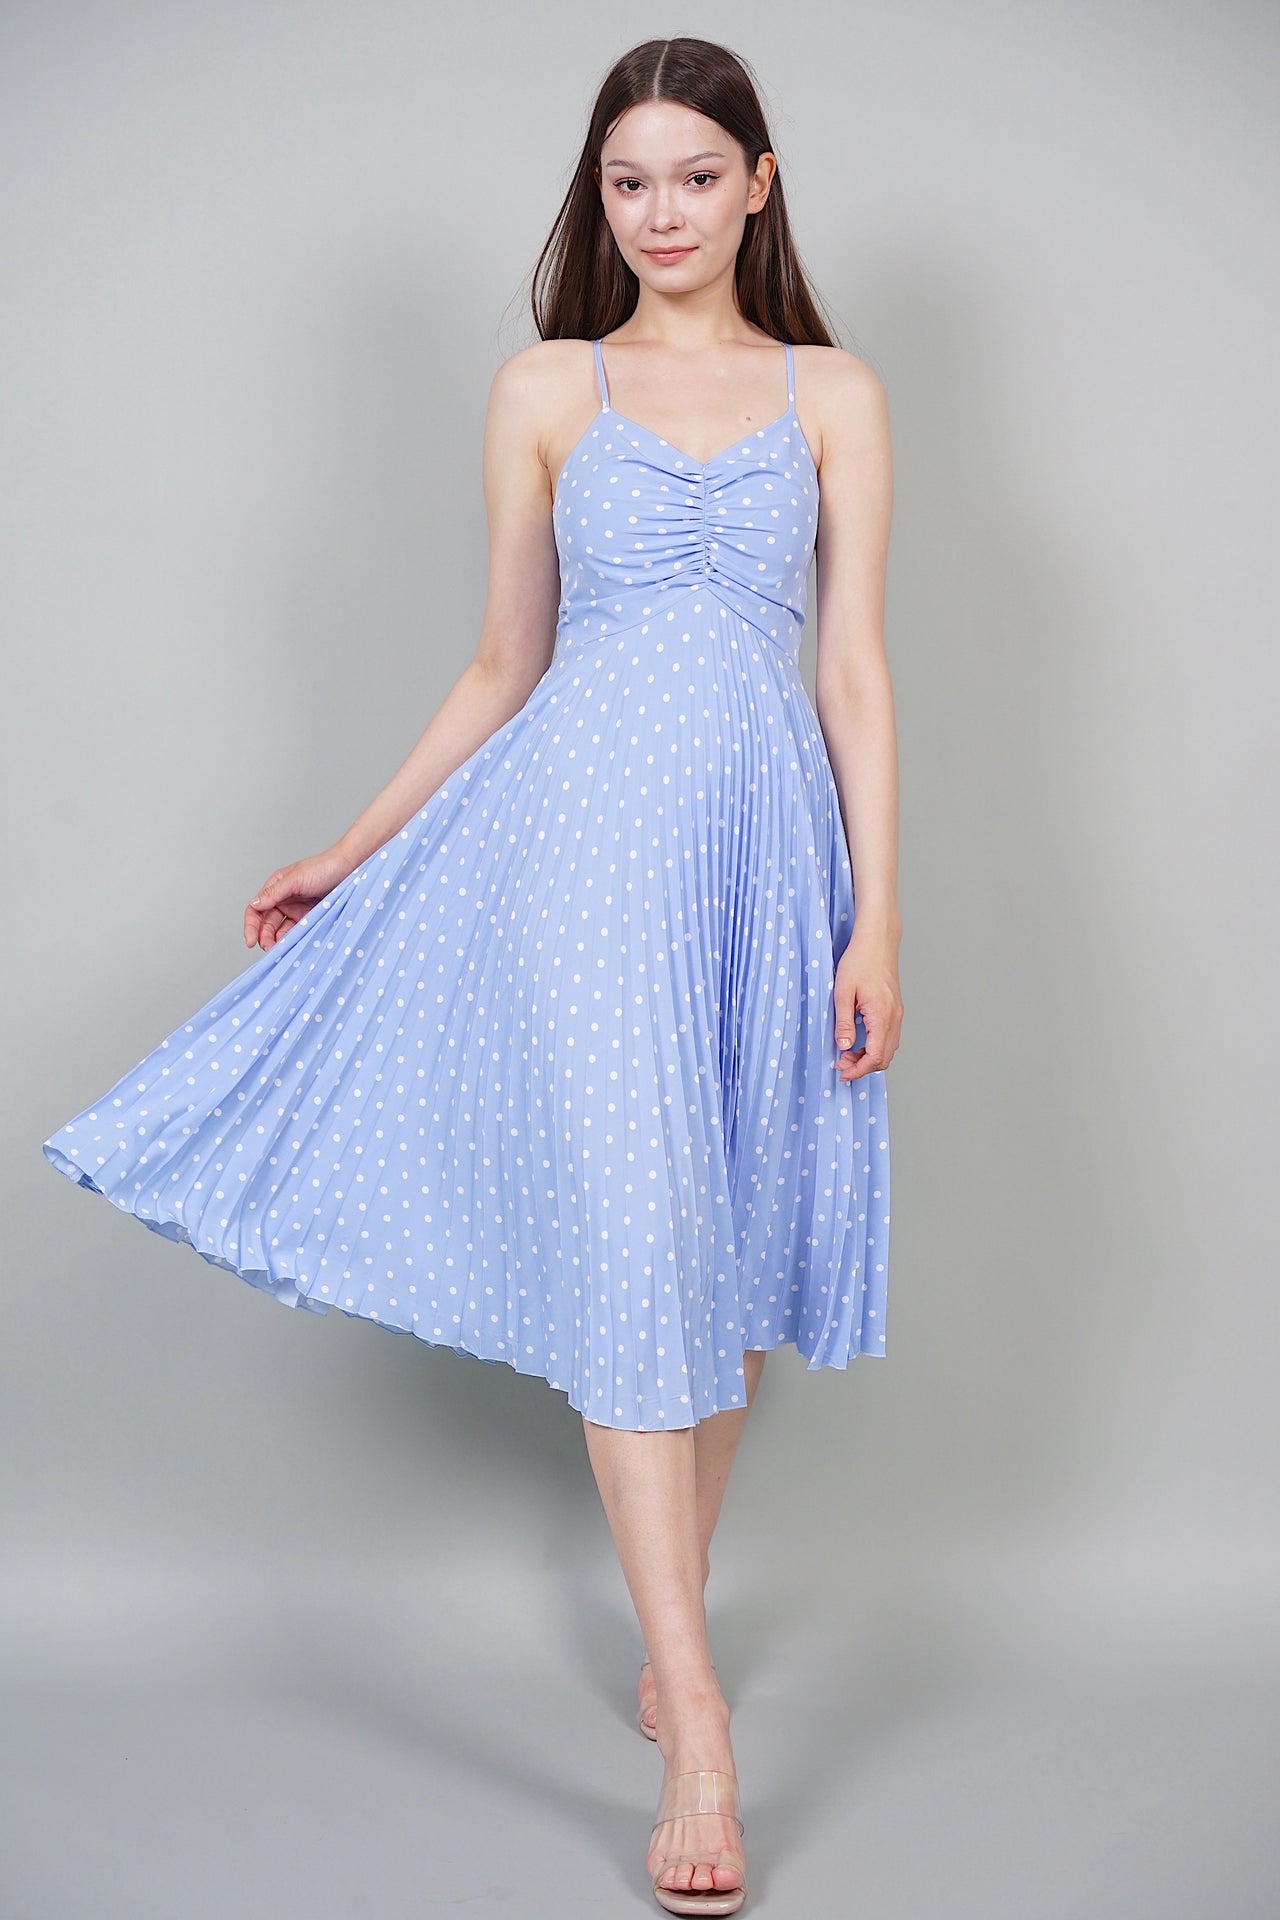 Tessa Pleated Dress in Blue Polka Dots